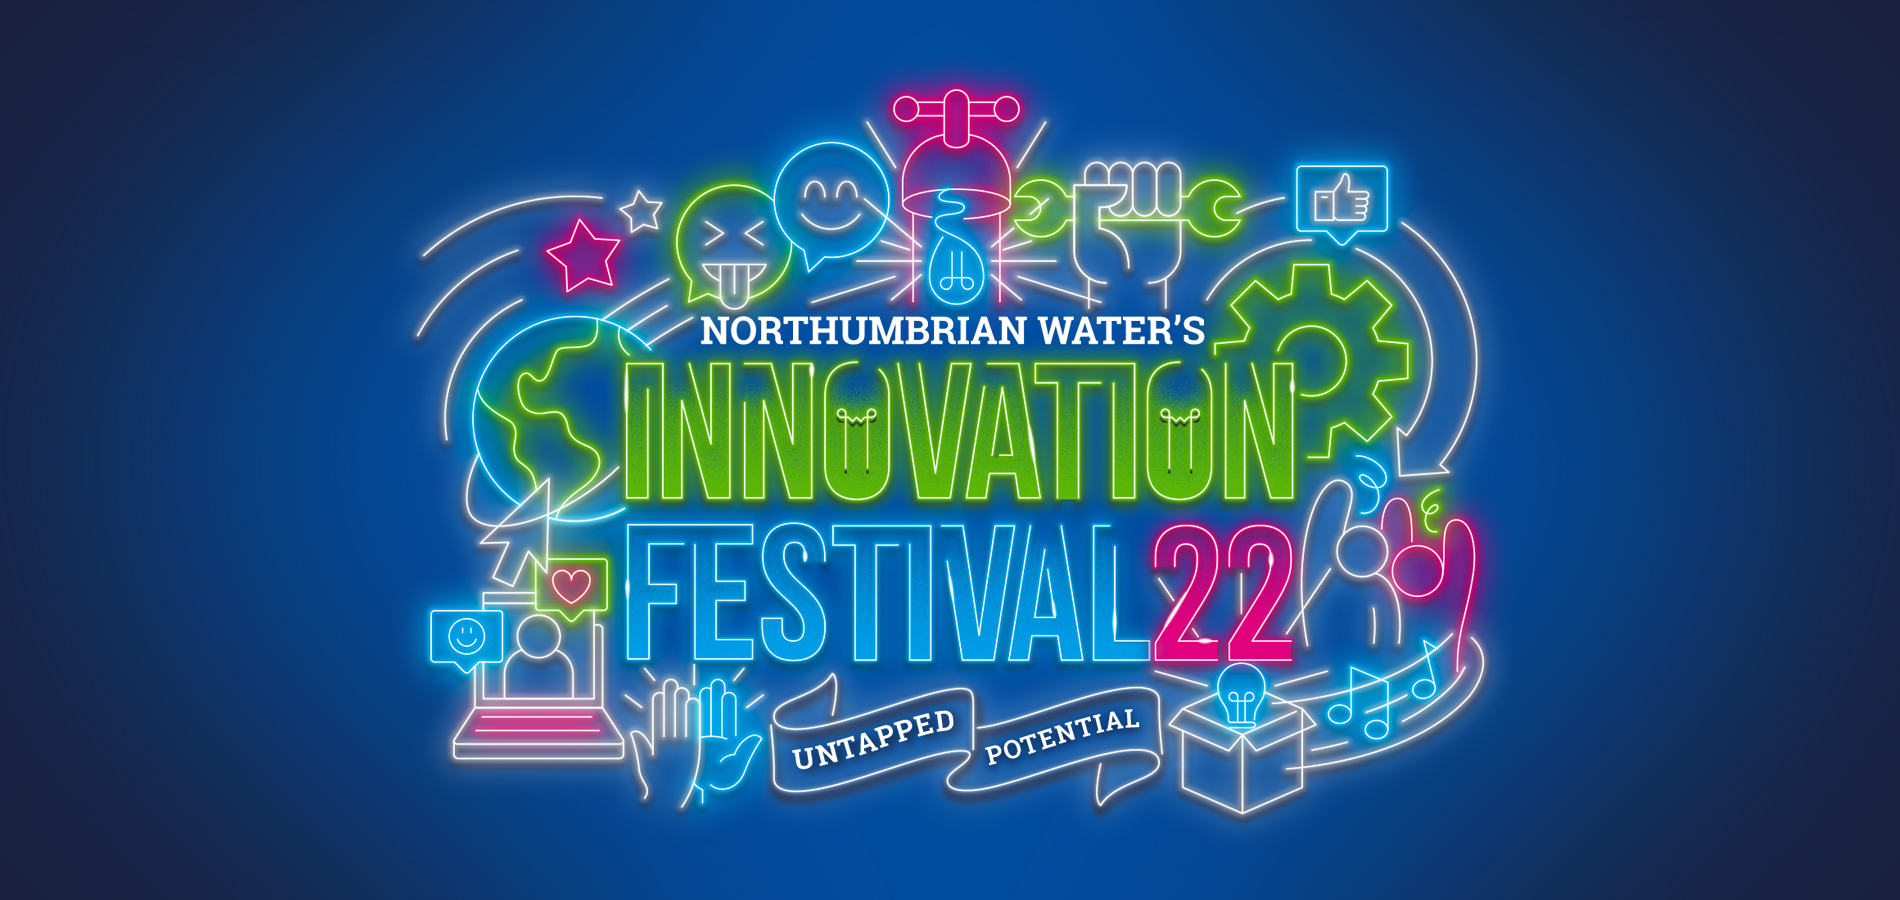 Registration opens for Innovation Festival 2022